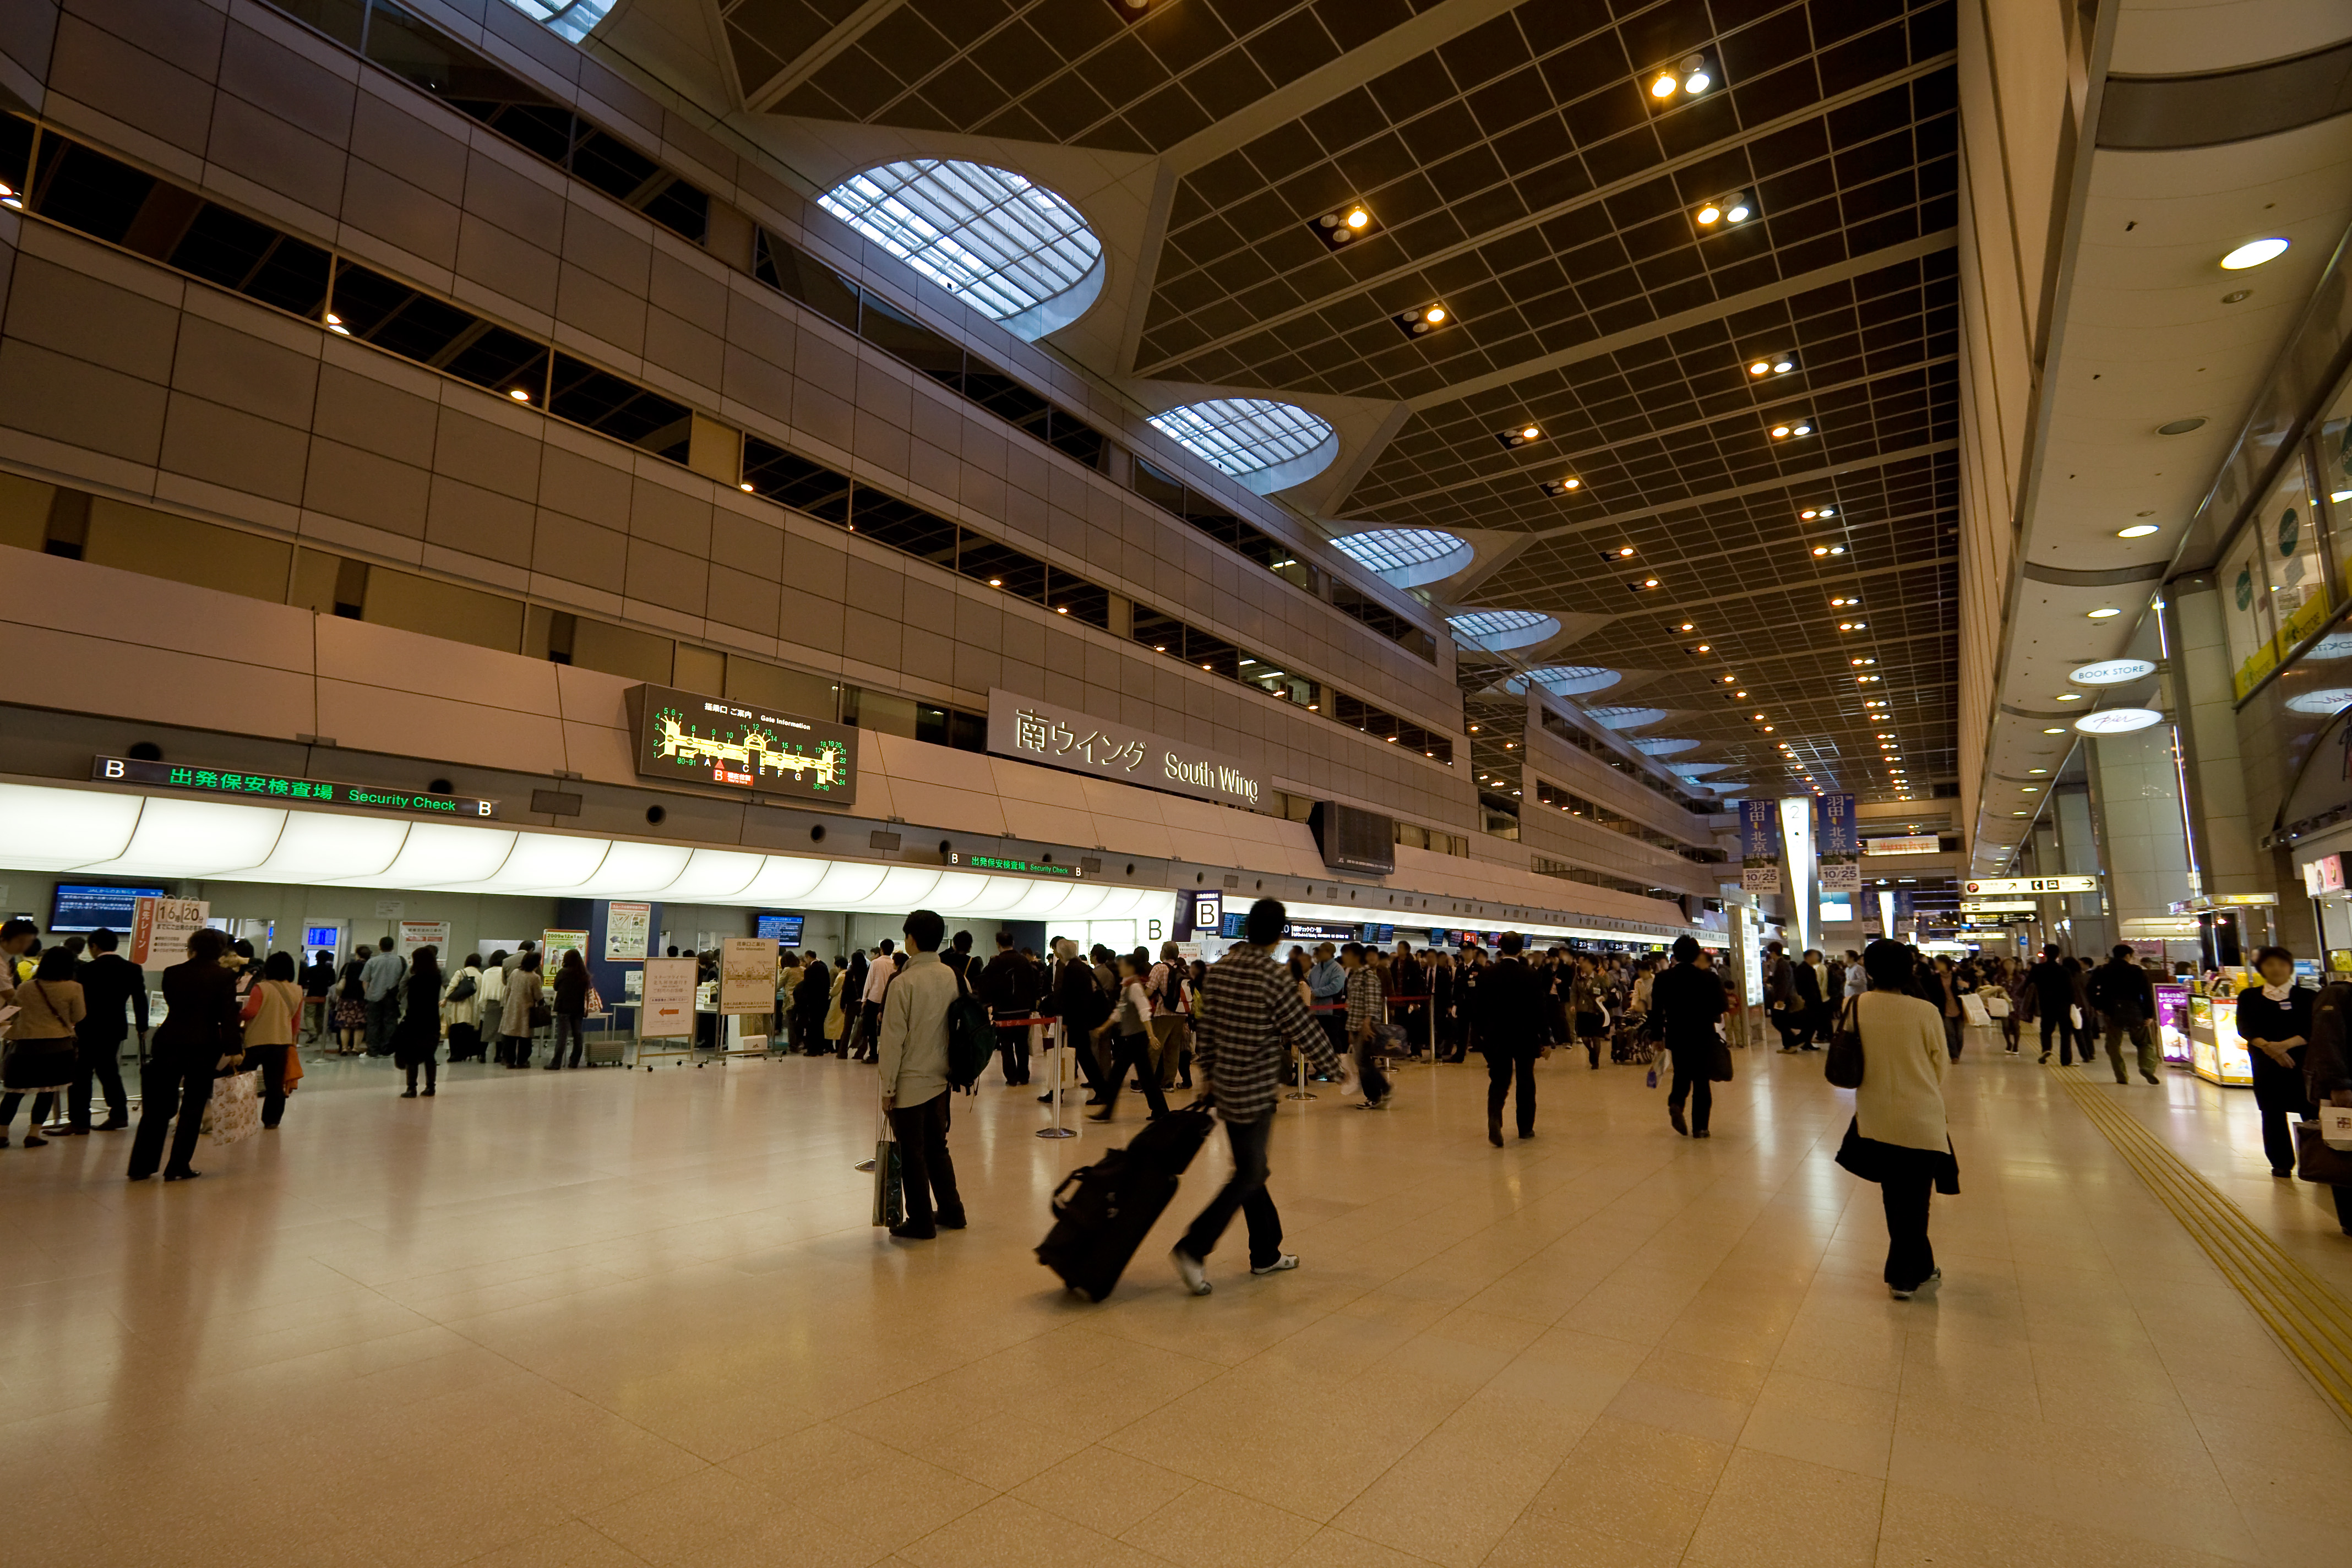 Airport terminal 1. Аэропорт Ханэда в Токио. Аэропорт Ханеда Япония. Аэропорт Токио-Ханеда (Япония). Международный аэропорт Токио (Ханэда) (Япония).